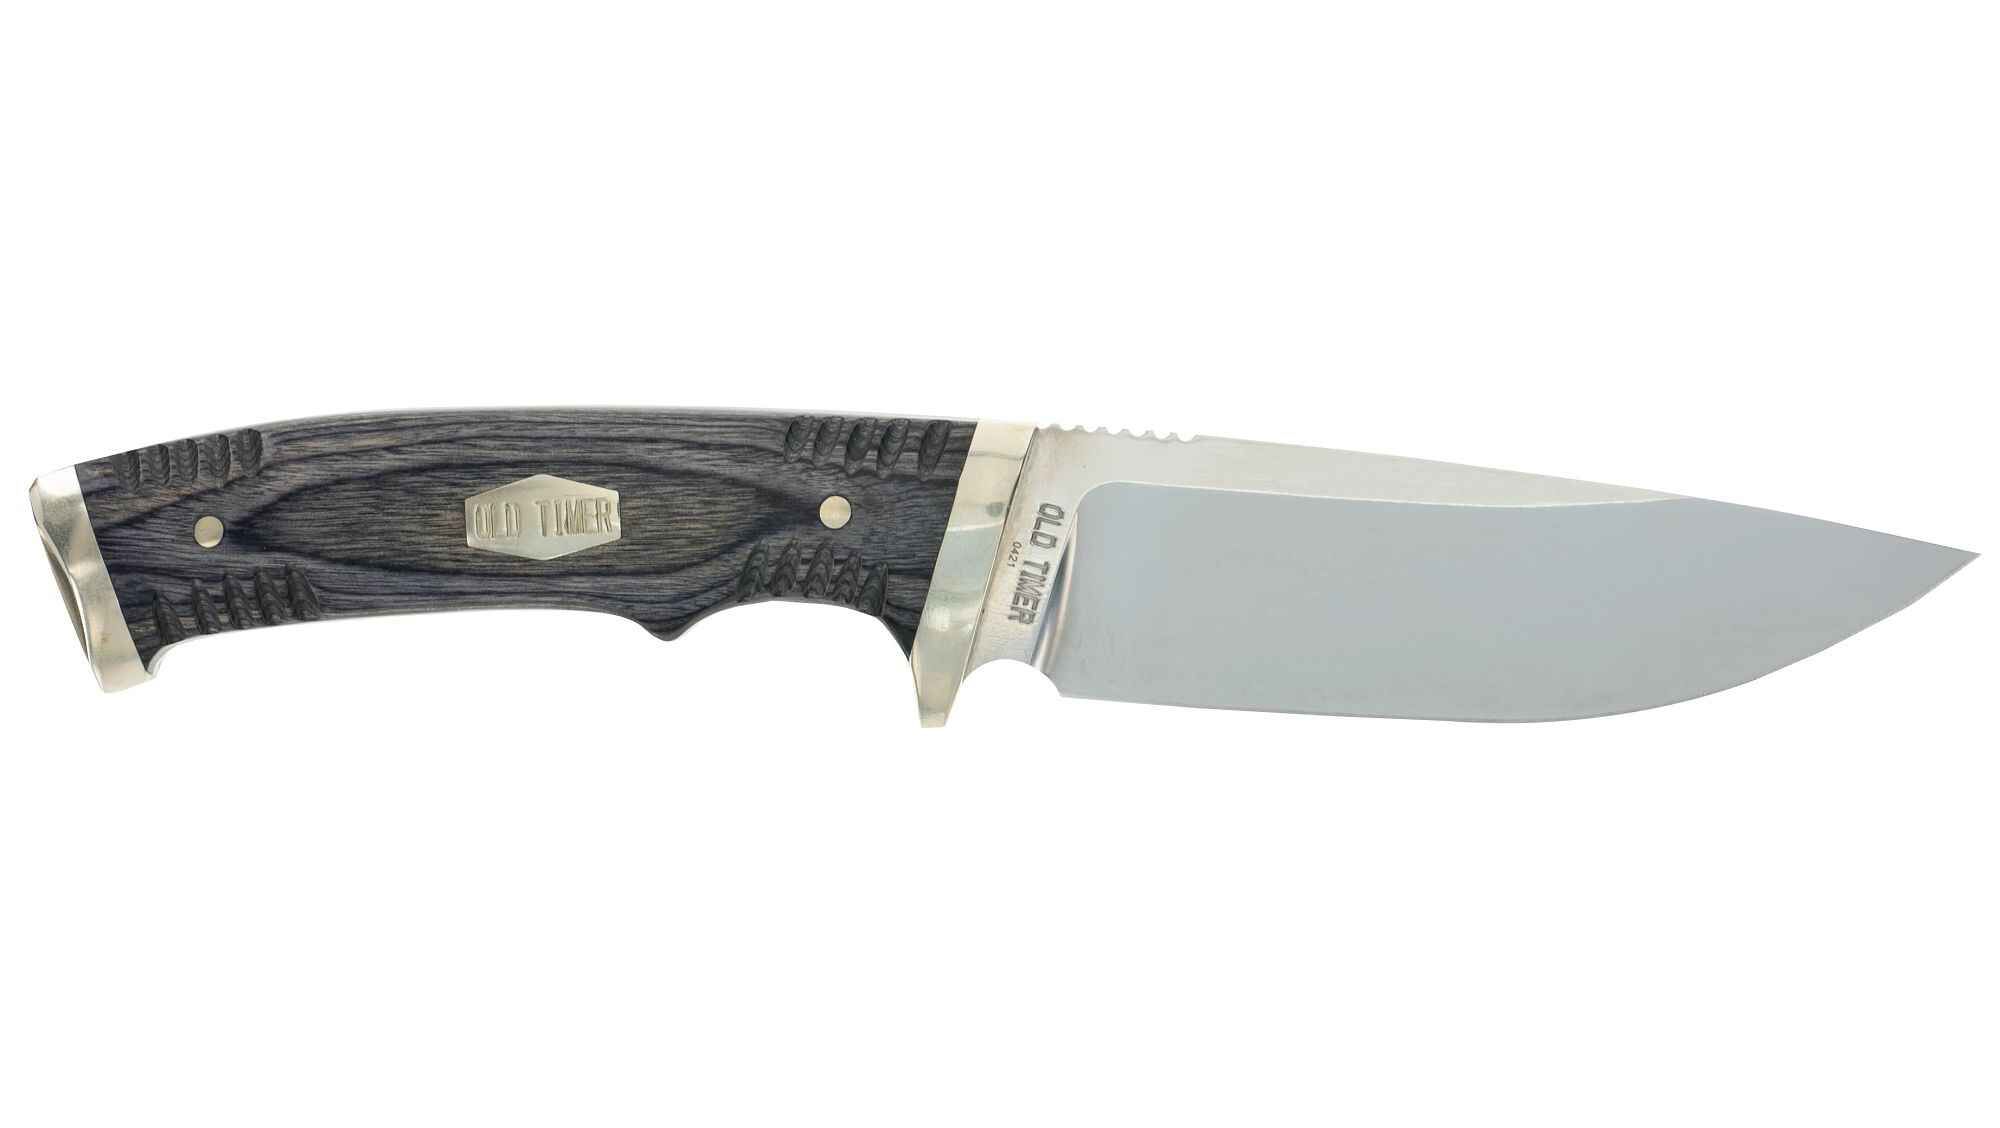 Knives For Sale - Hunting Knife, Kitchen Knife, Survival Knife